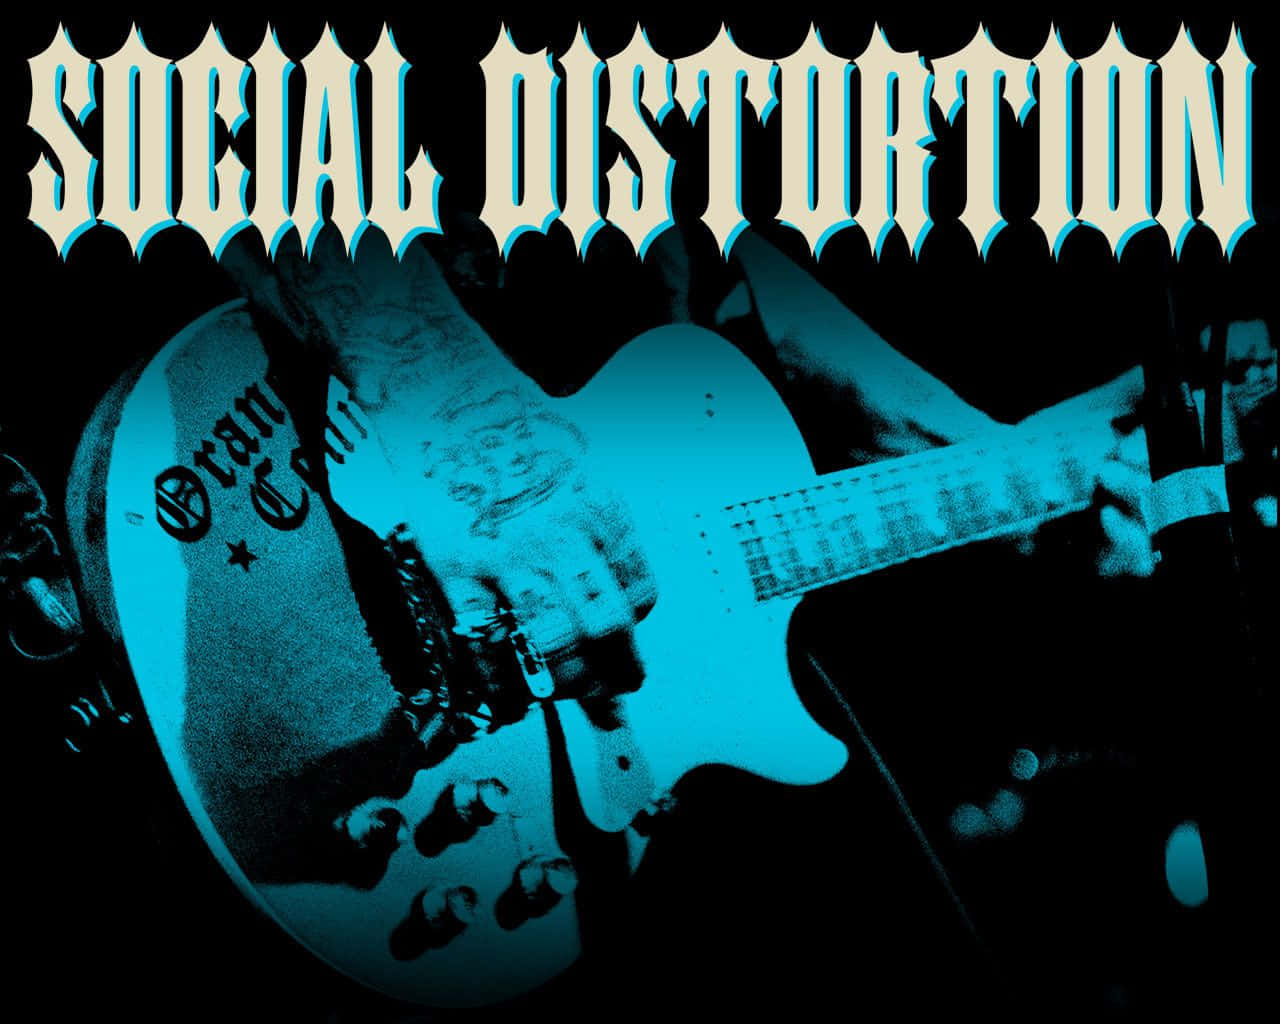 Tätowiertehand, Die Gitarre Spielt - Social Distortion Wallpaper